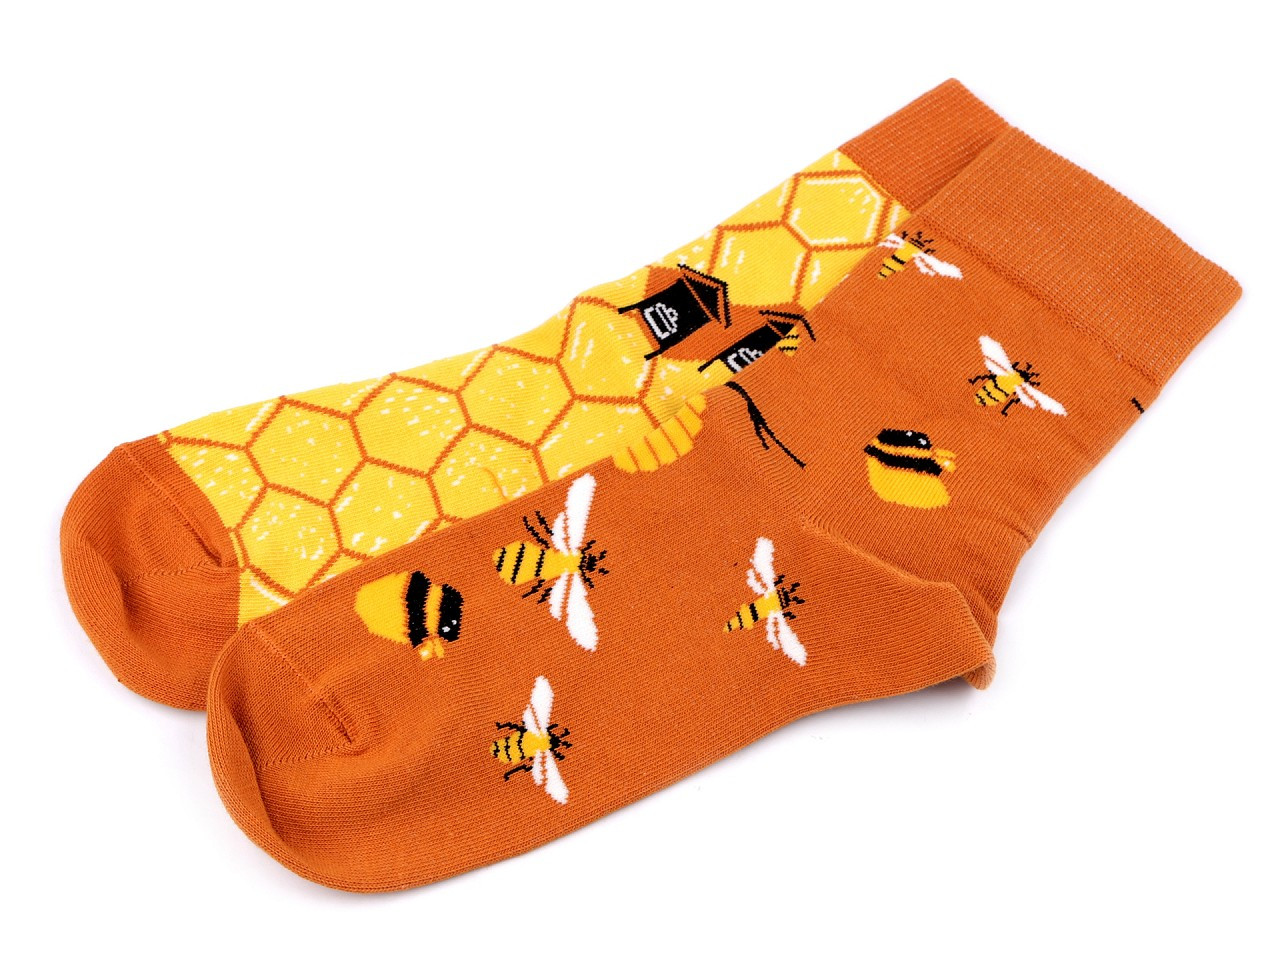 Veselé ponožky Wola, bavlněné, barva 64 (vel. 35-38) žlutá včela